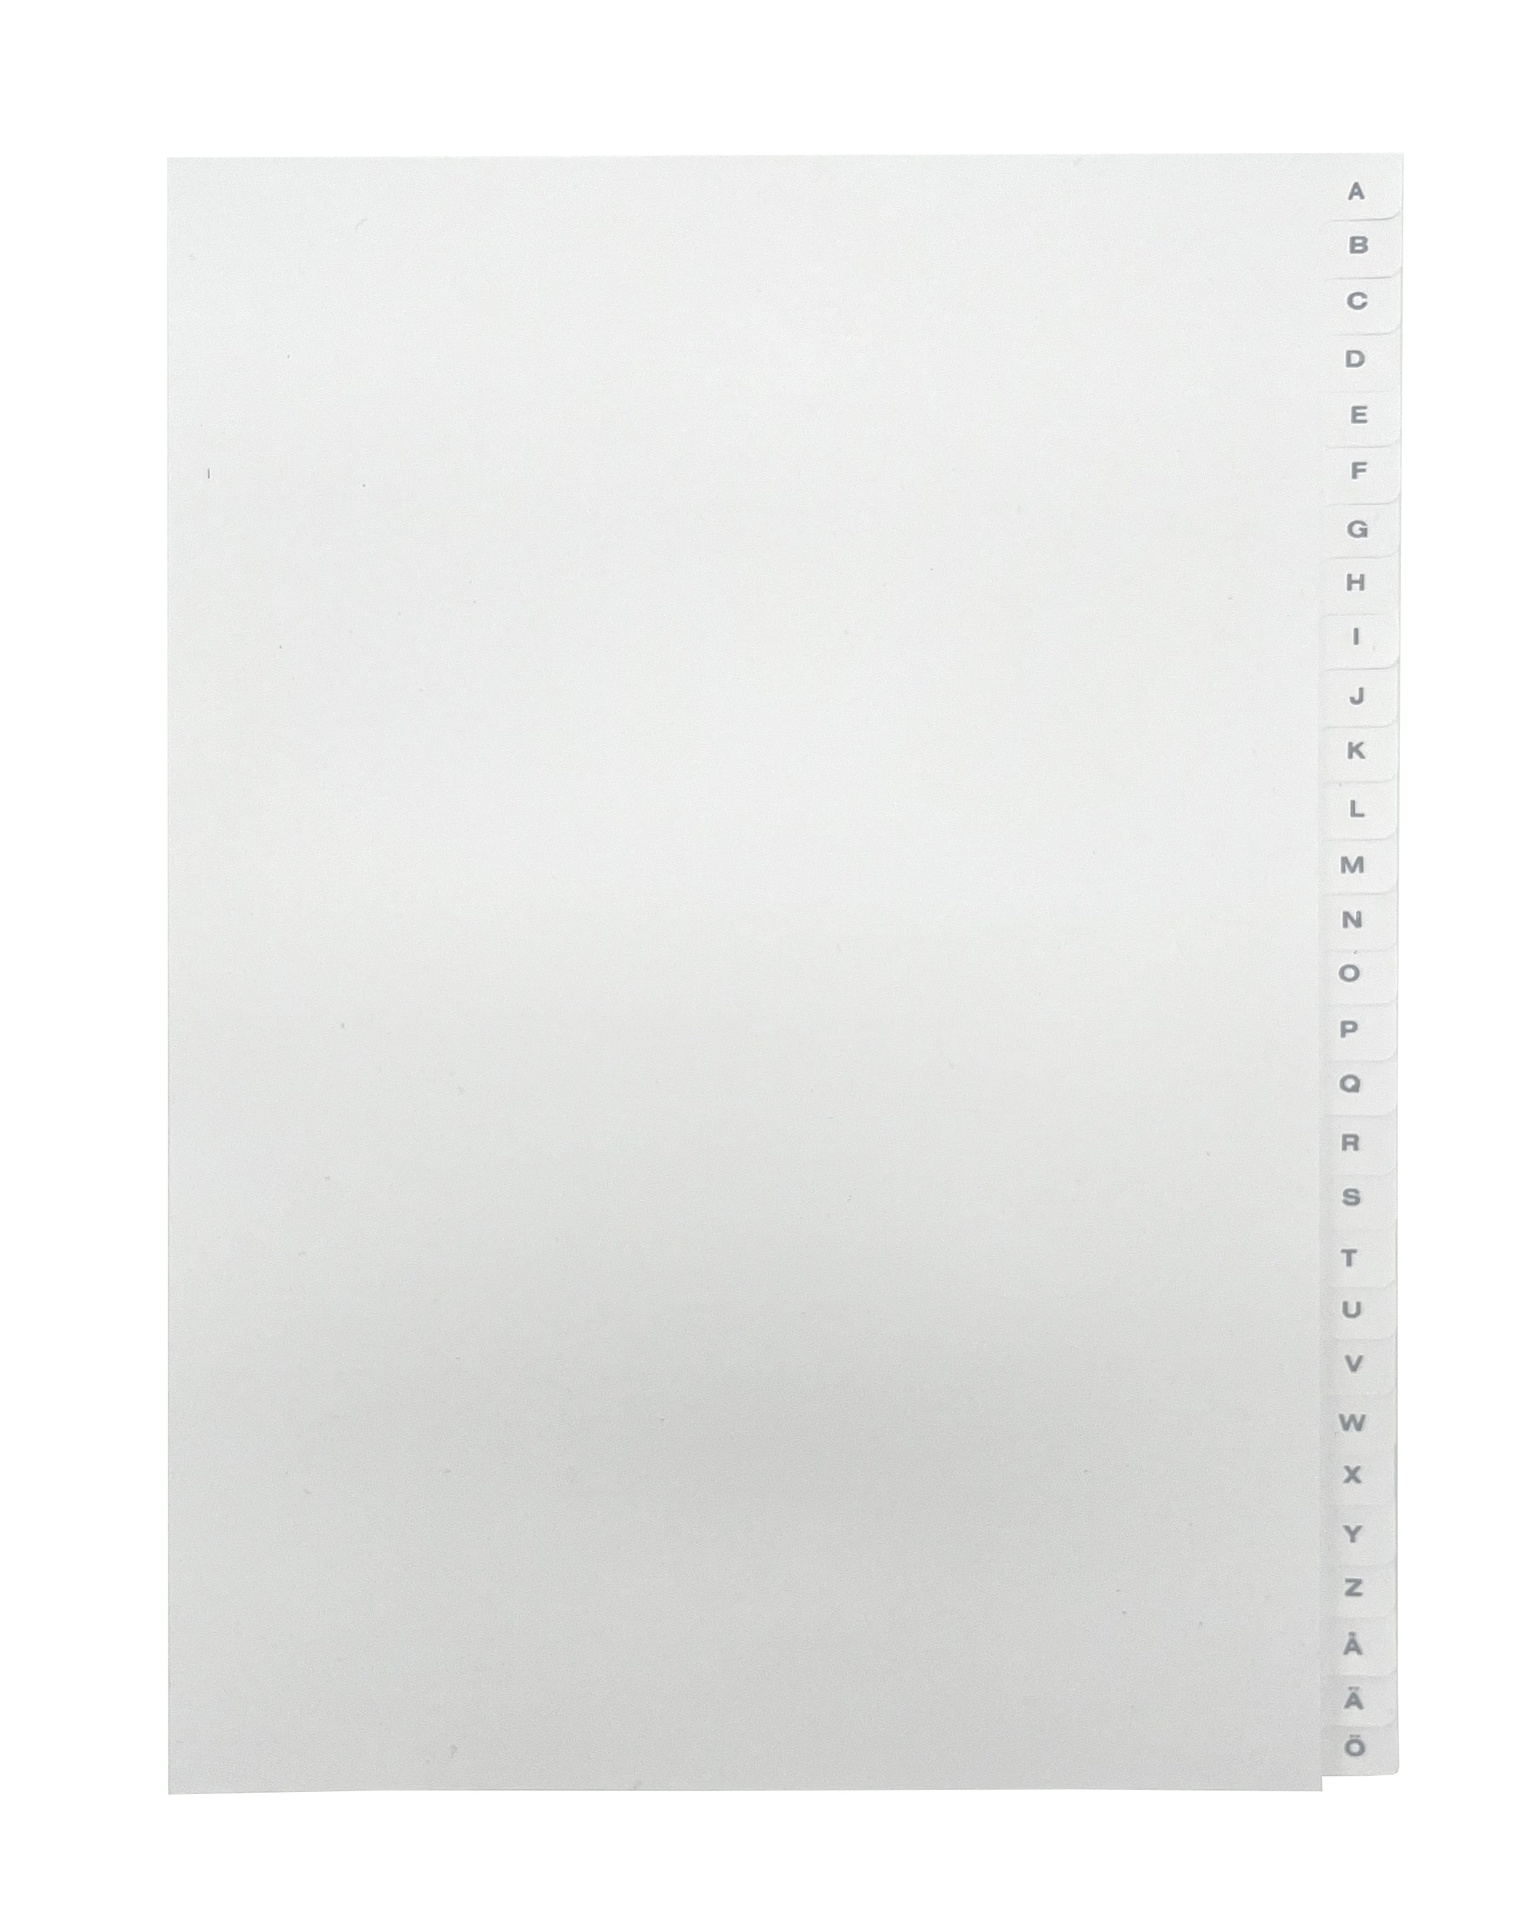 [EEHANNE025] Pärmregister A4 A-Ö vita med grått tryck 10st/fp